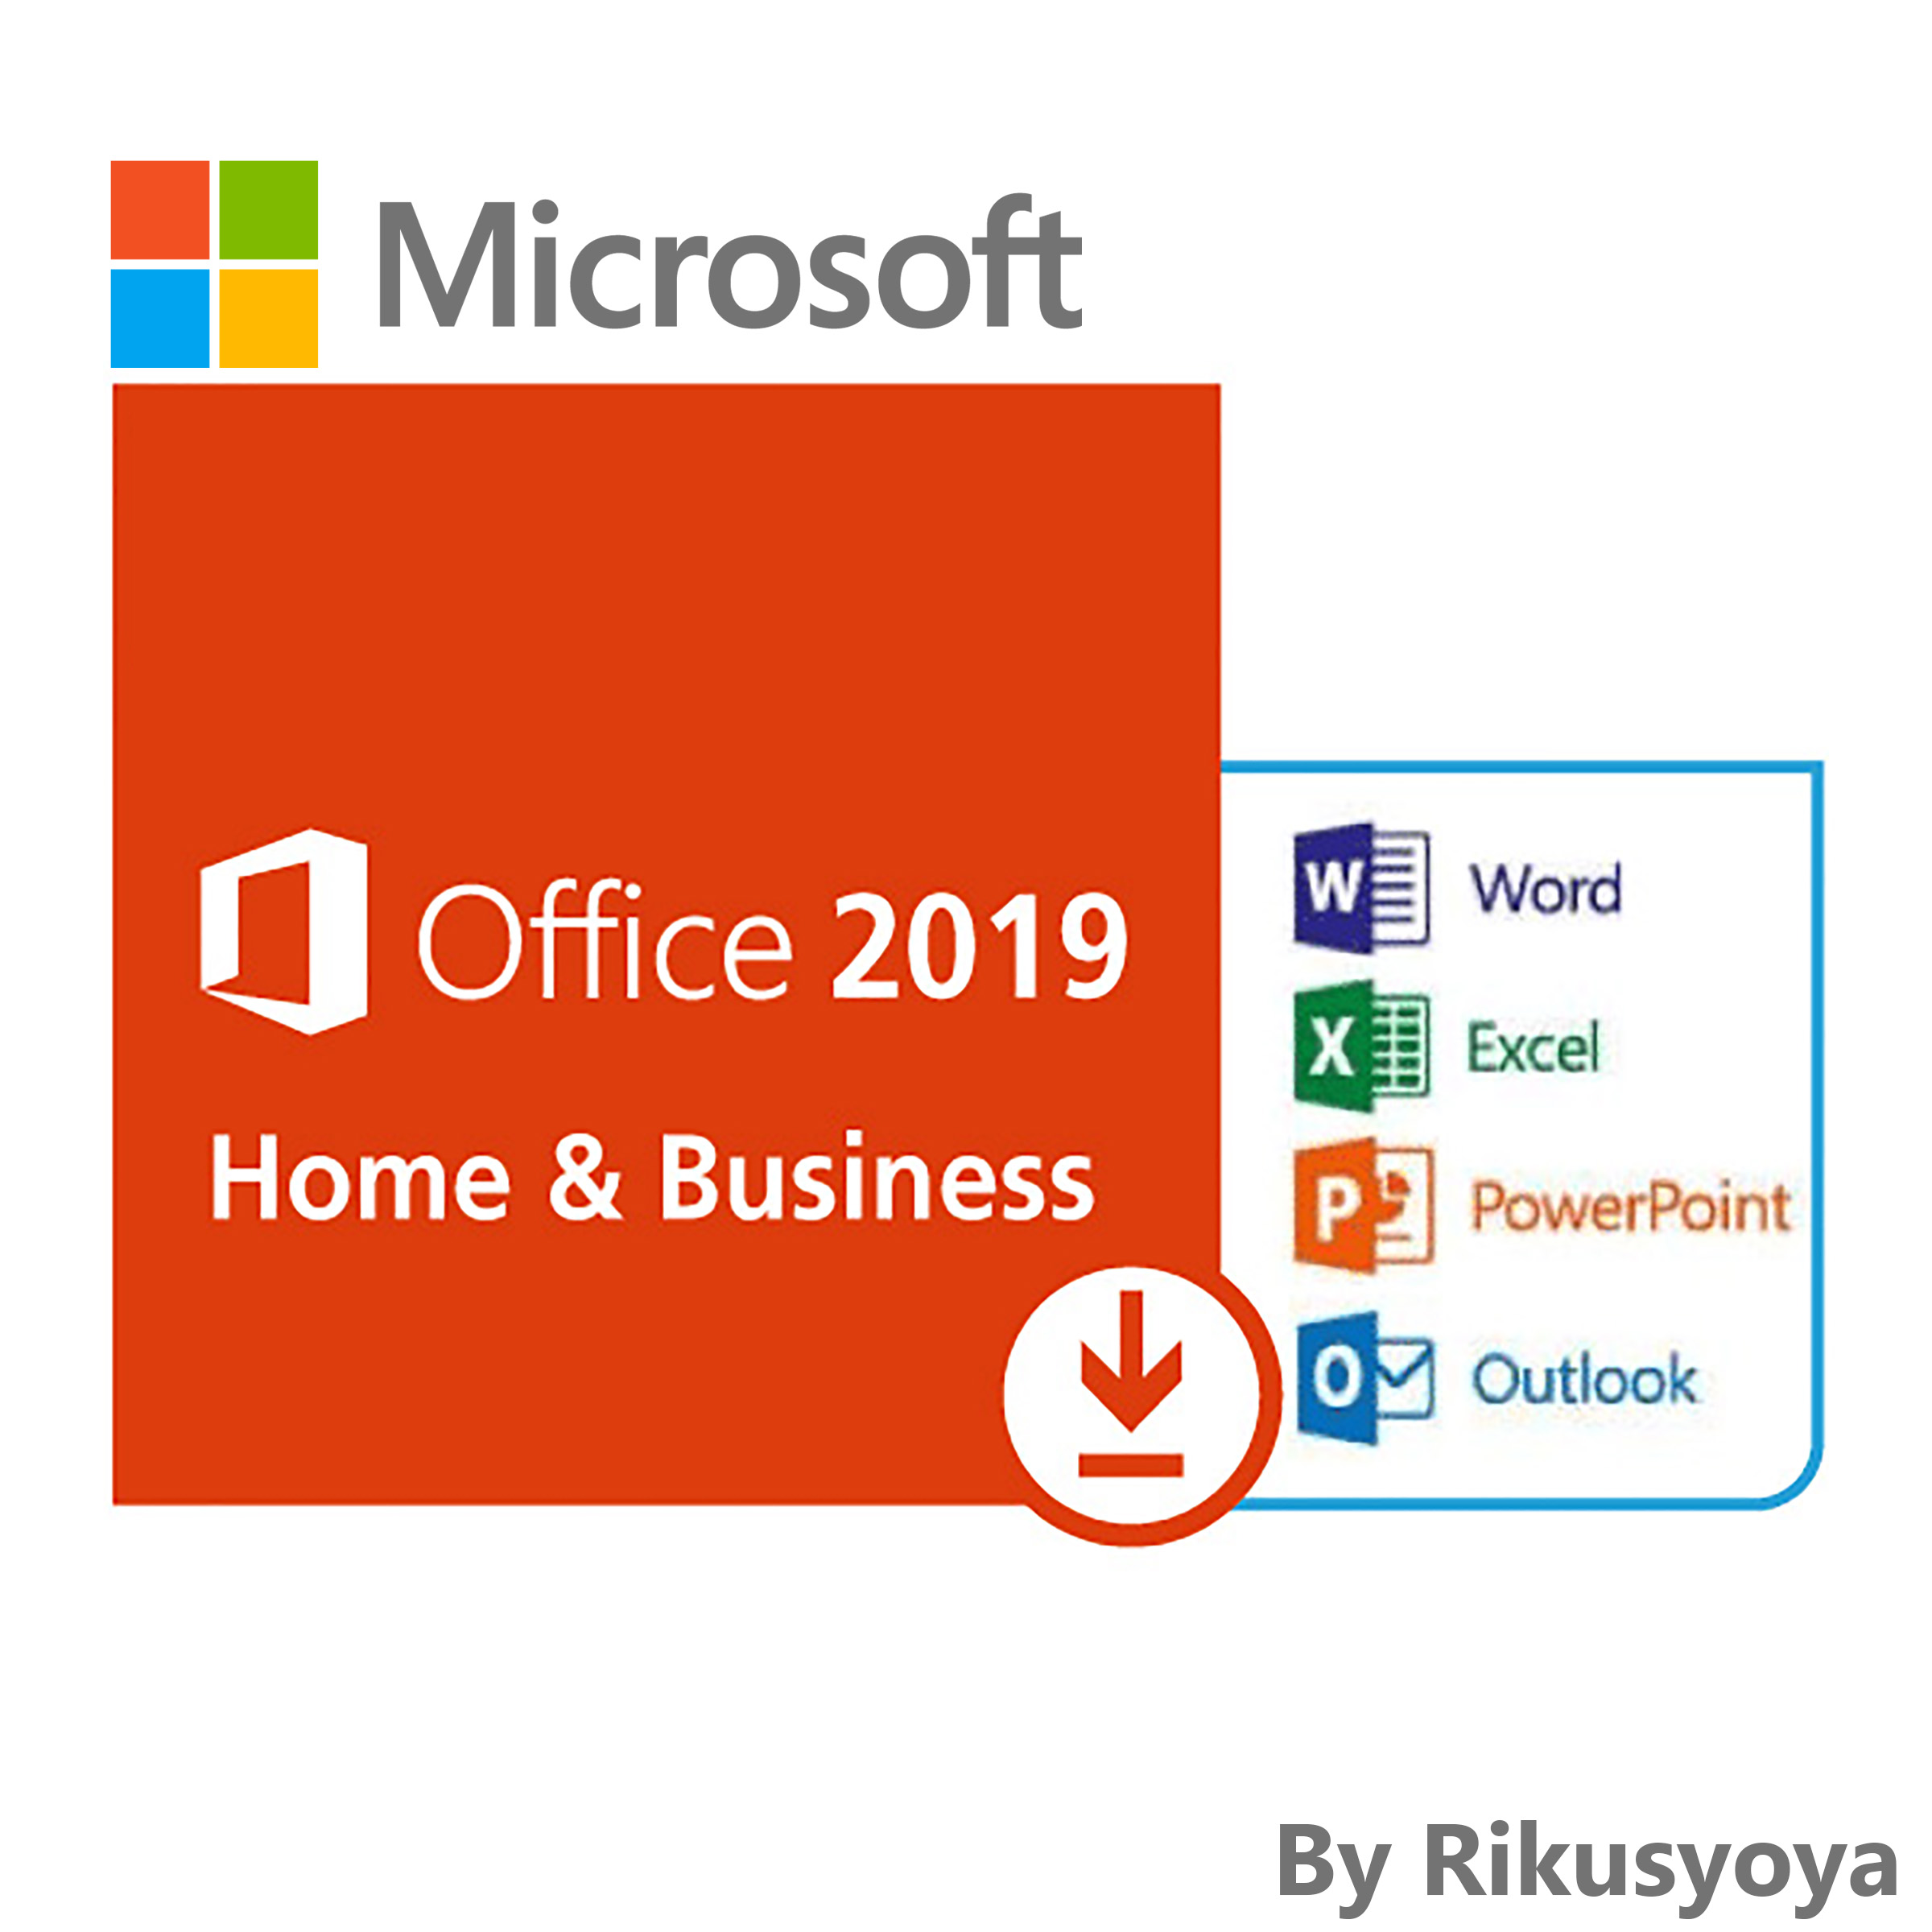 安全 送料無料 新品未開封 Microsoft Office 限定特価 Home and 即納可能 PC一台認証 2019 Business